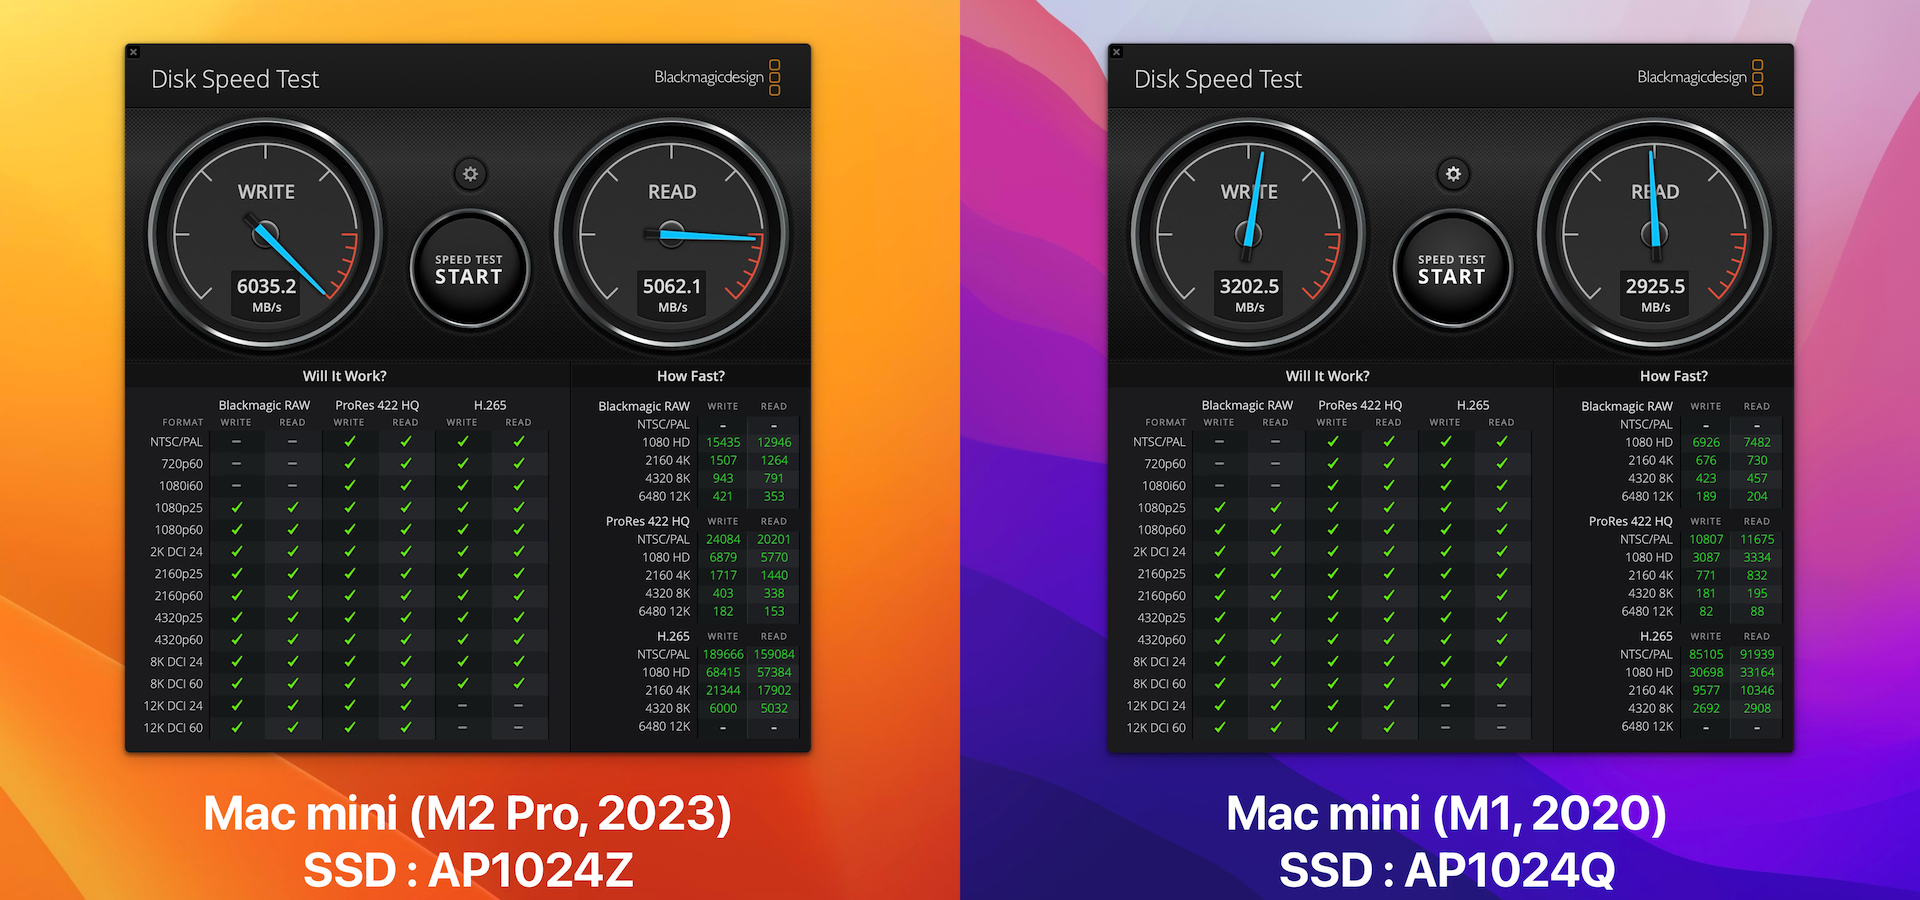 Mac mini (M2 Pro, 2023) 1TBモデルとMac mini (M1, 2020) 1TBモデルのBlackmagic Disk Speedtest